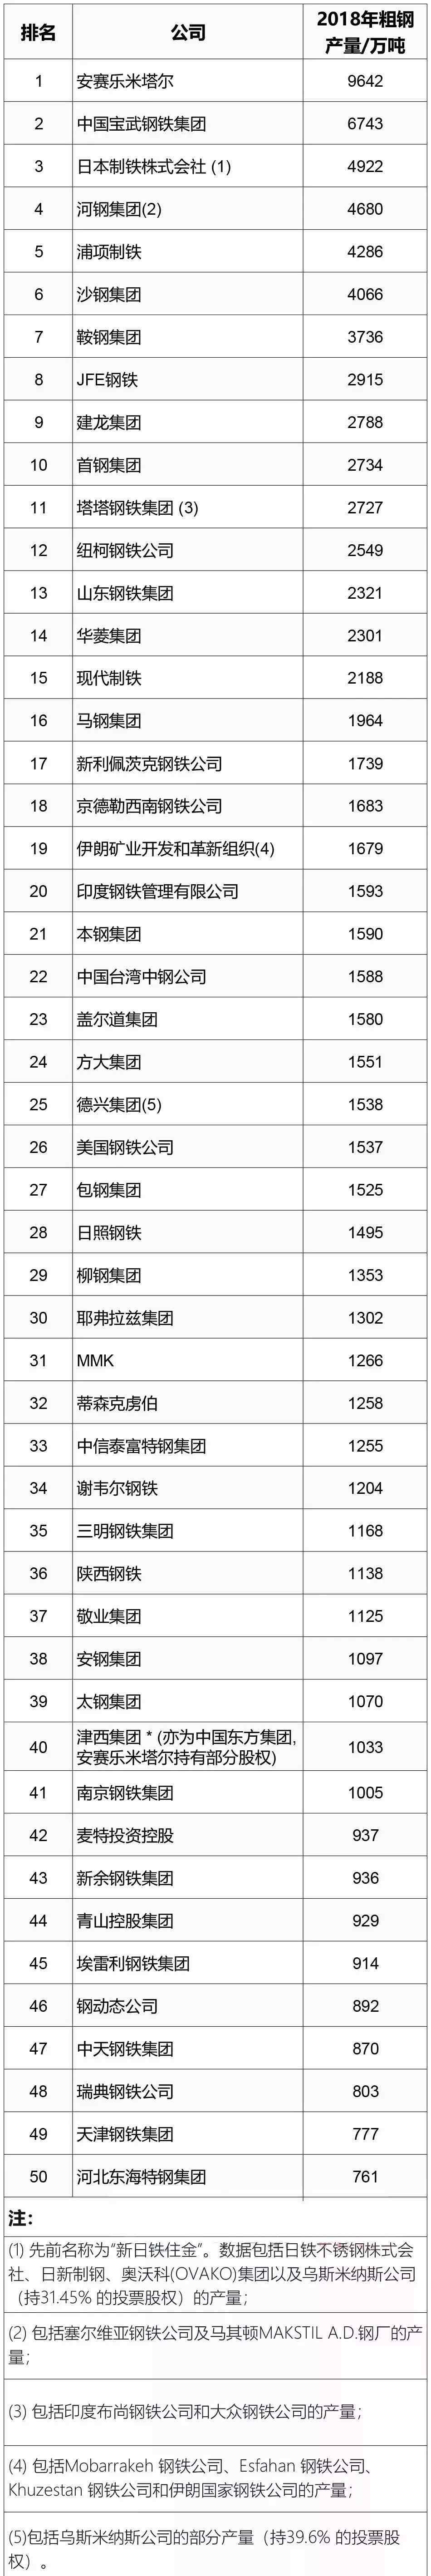 中国钢企排名 钢铁企业排名:全球50大钢企排行榜